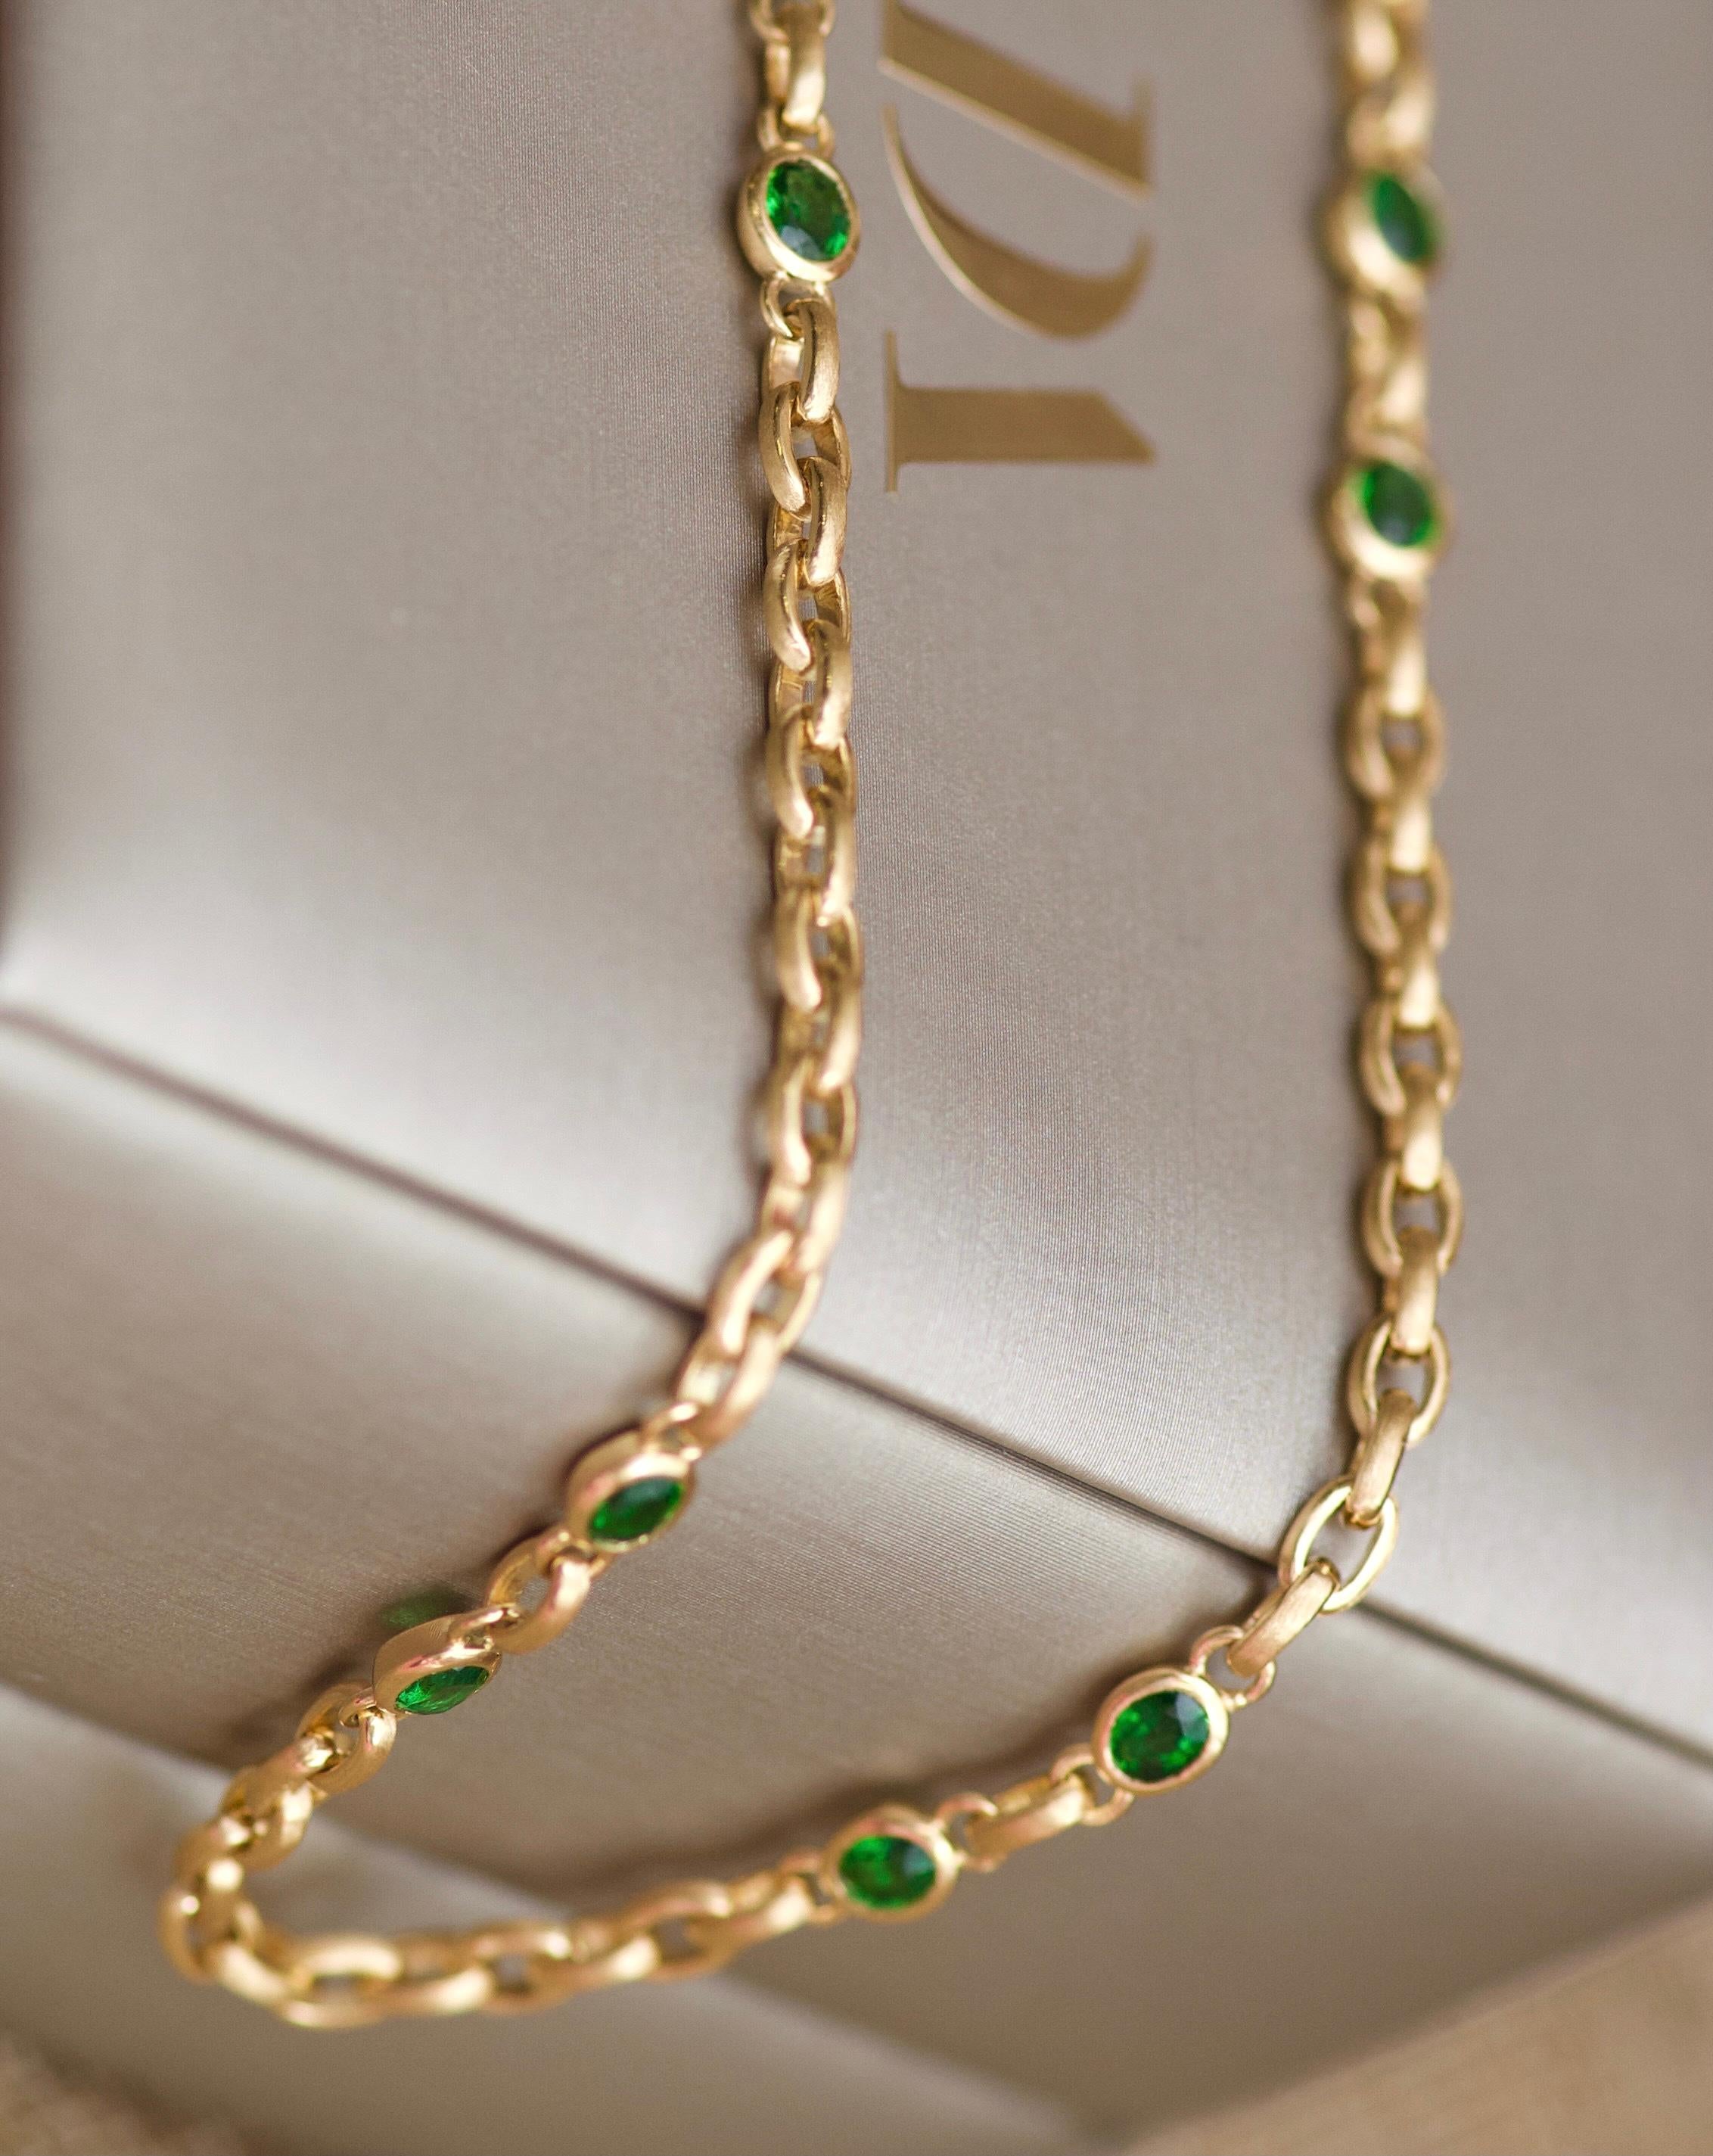 Oval Cut 4 Carat Intense Green Tsavorite 18 Karat Matte Yellow Gold Necklace Chain